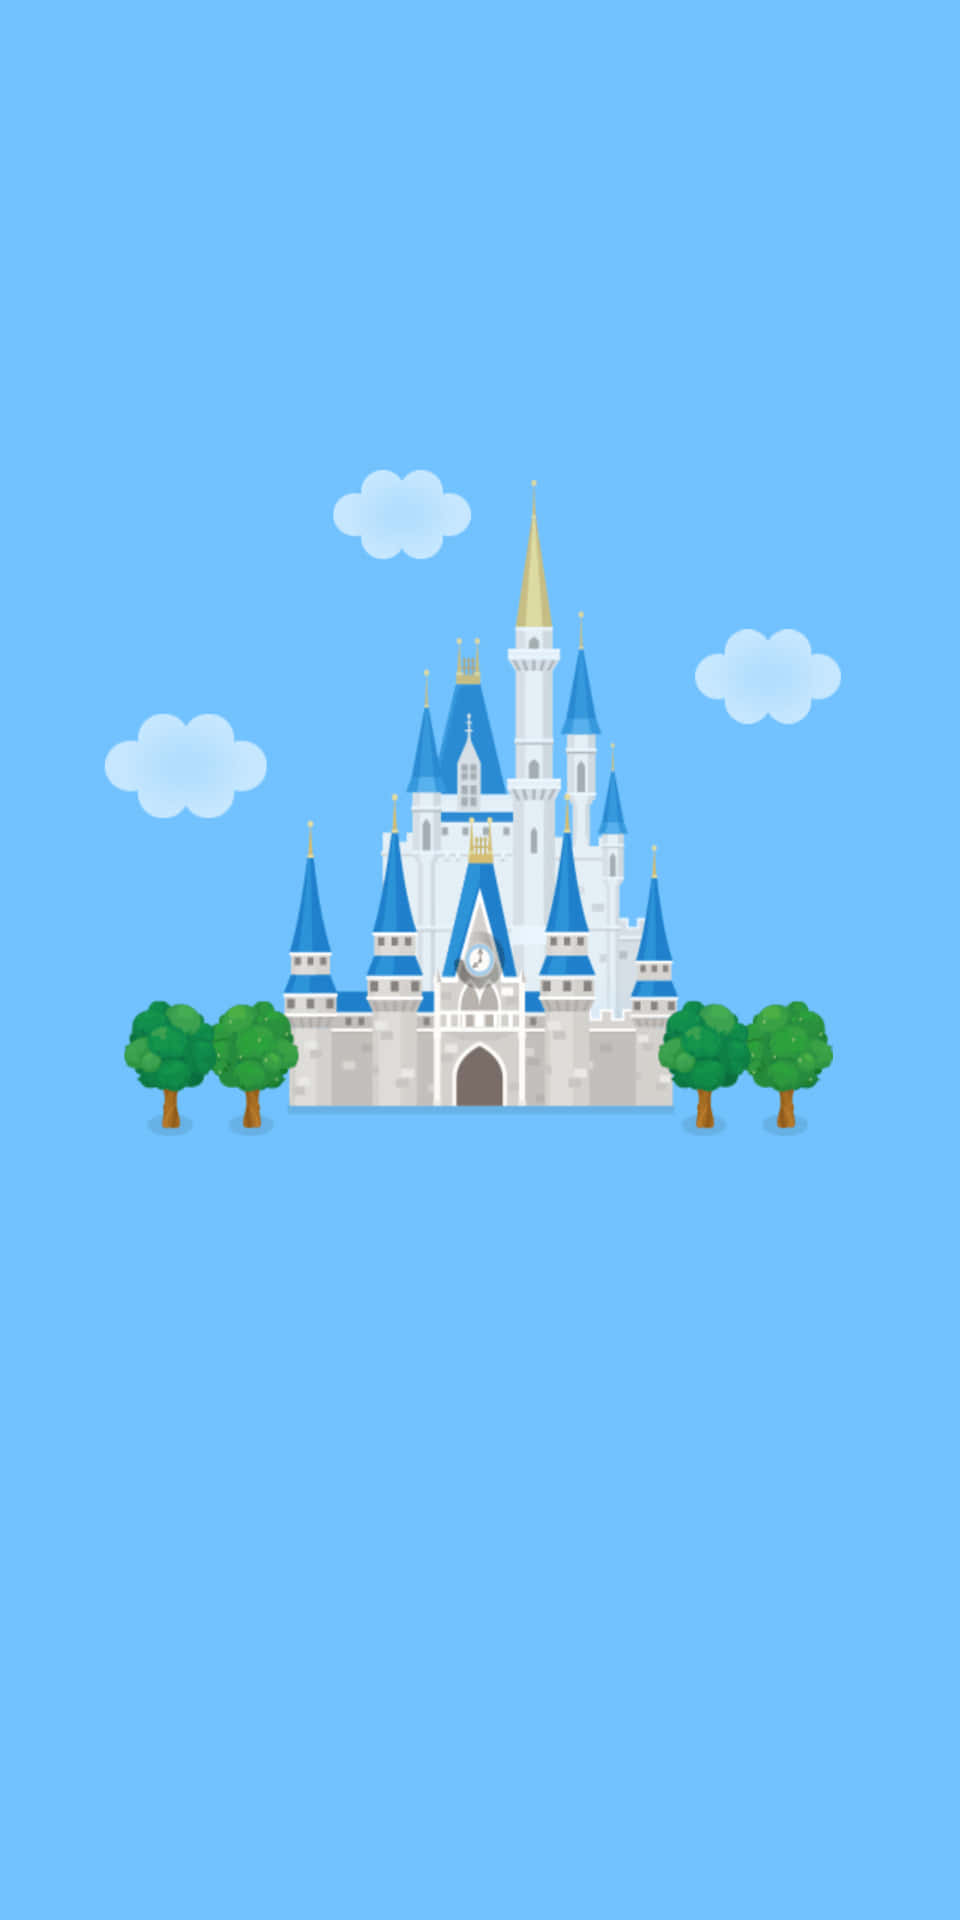 Genießensie Die Farbenpracht Und Bildwelt Von Disney Auf Ihrem Tech-gerät Mit Dem Pixel 3!